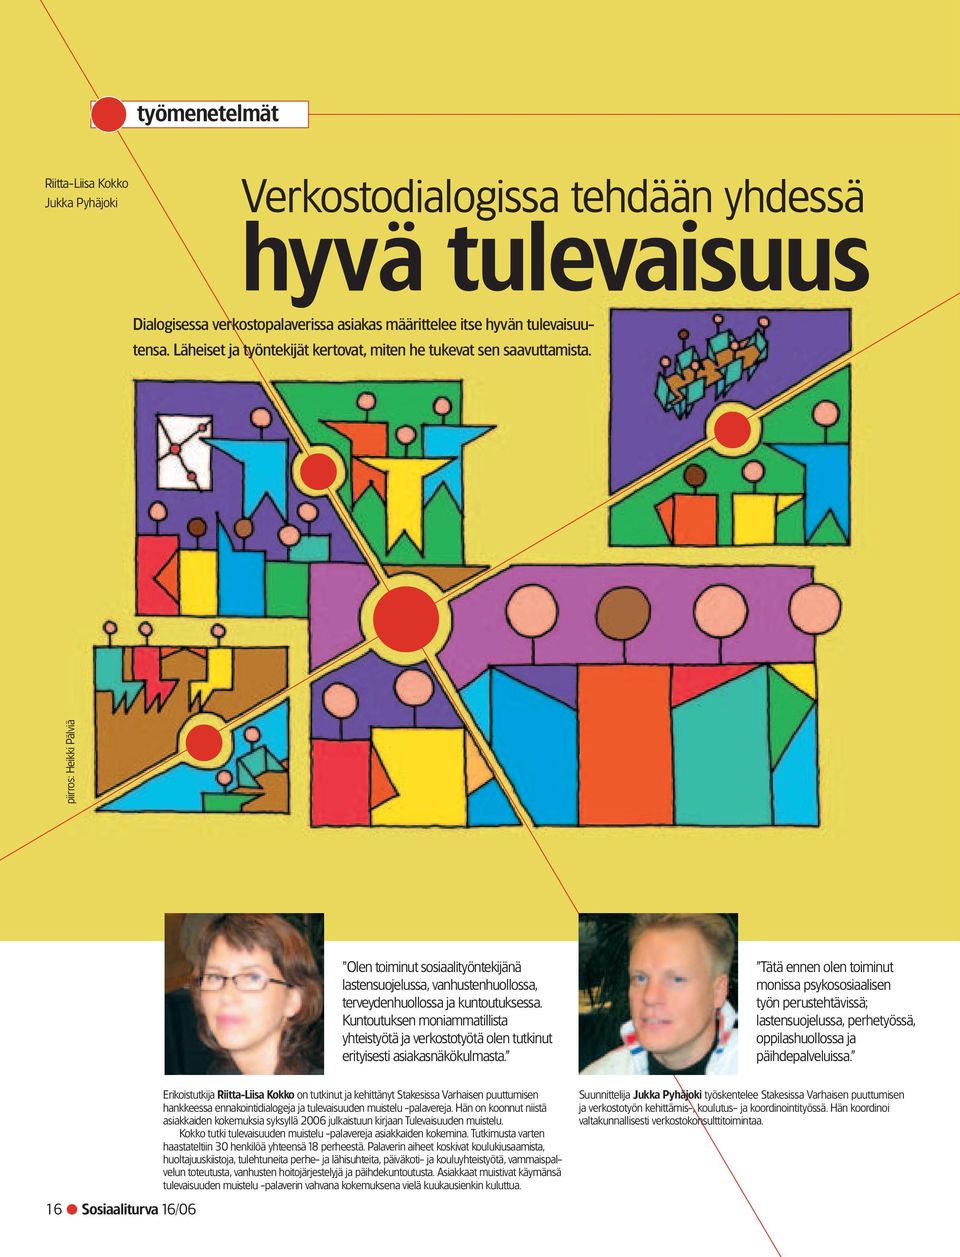 piirros: Heikki Pälviä Olen toiminut sosiaalityöntekijänä lastensuojelussa, vanhustenhuollossa, terveydenhuollossa ja kuntoutuksessa.